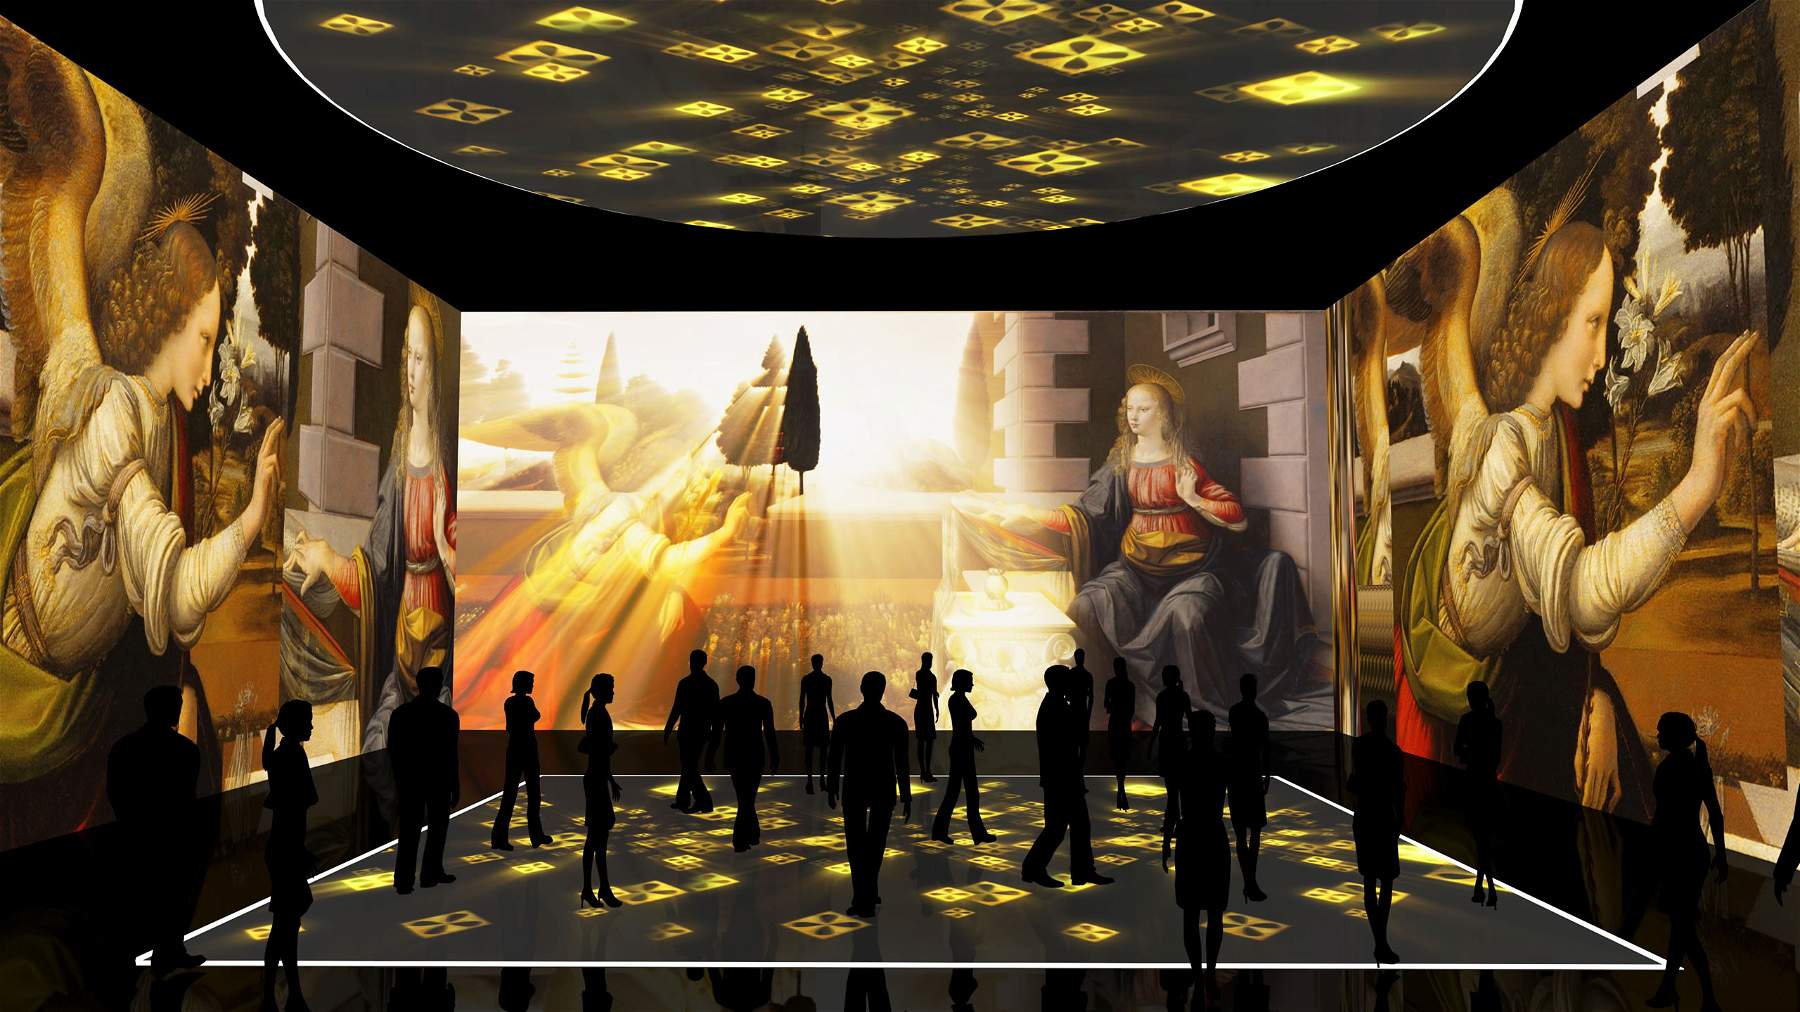 A Milano, Leonardo da Vinci è anche in 3D: alla Fabbrica del Vapore un evento multisensoriale